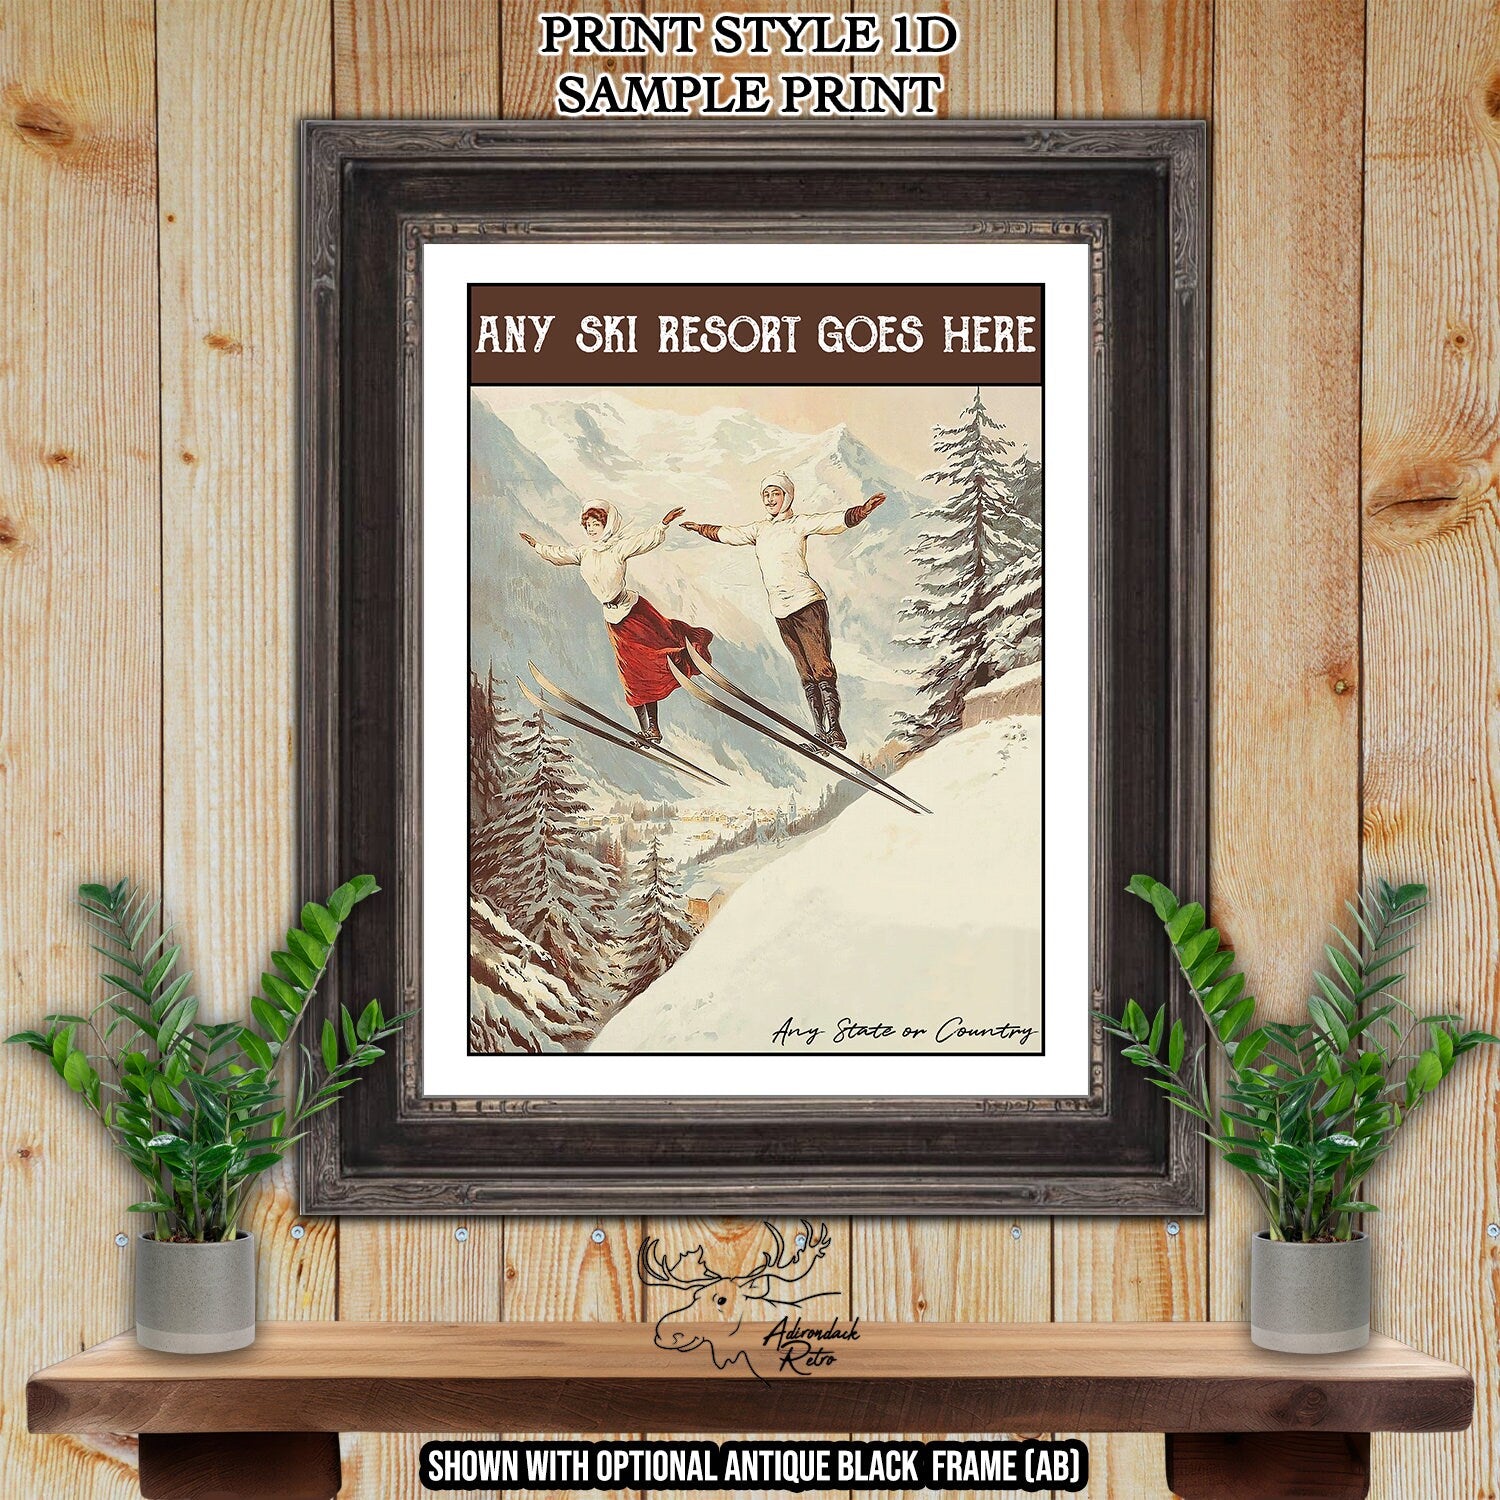 Goderdzi Georgia Retro Ski Resort Art Print